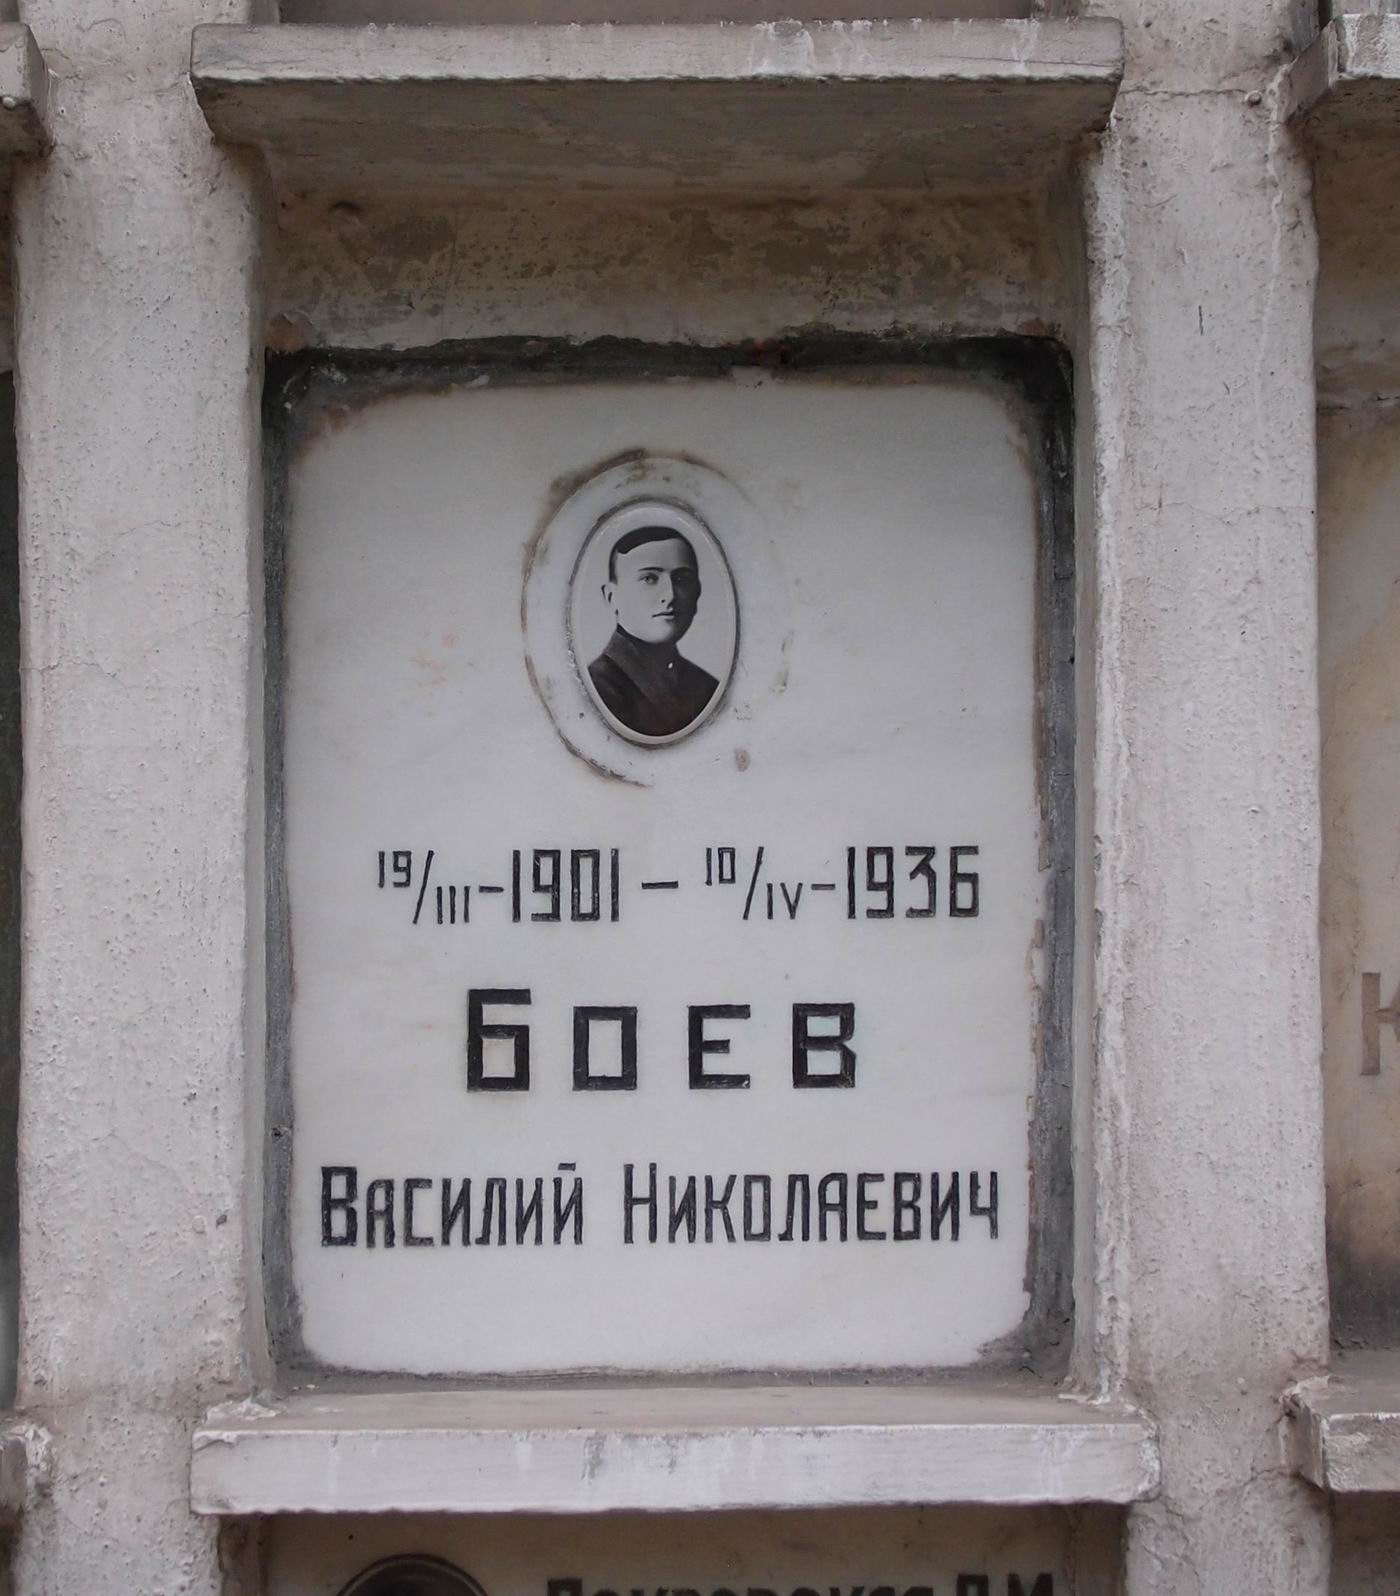 Плита на нише Боева В.Н. (1901–1936), на Новодевичьем кладбище (колумбарий [7]–5–2).